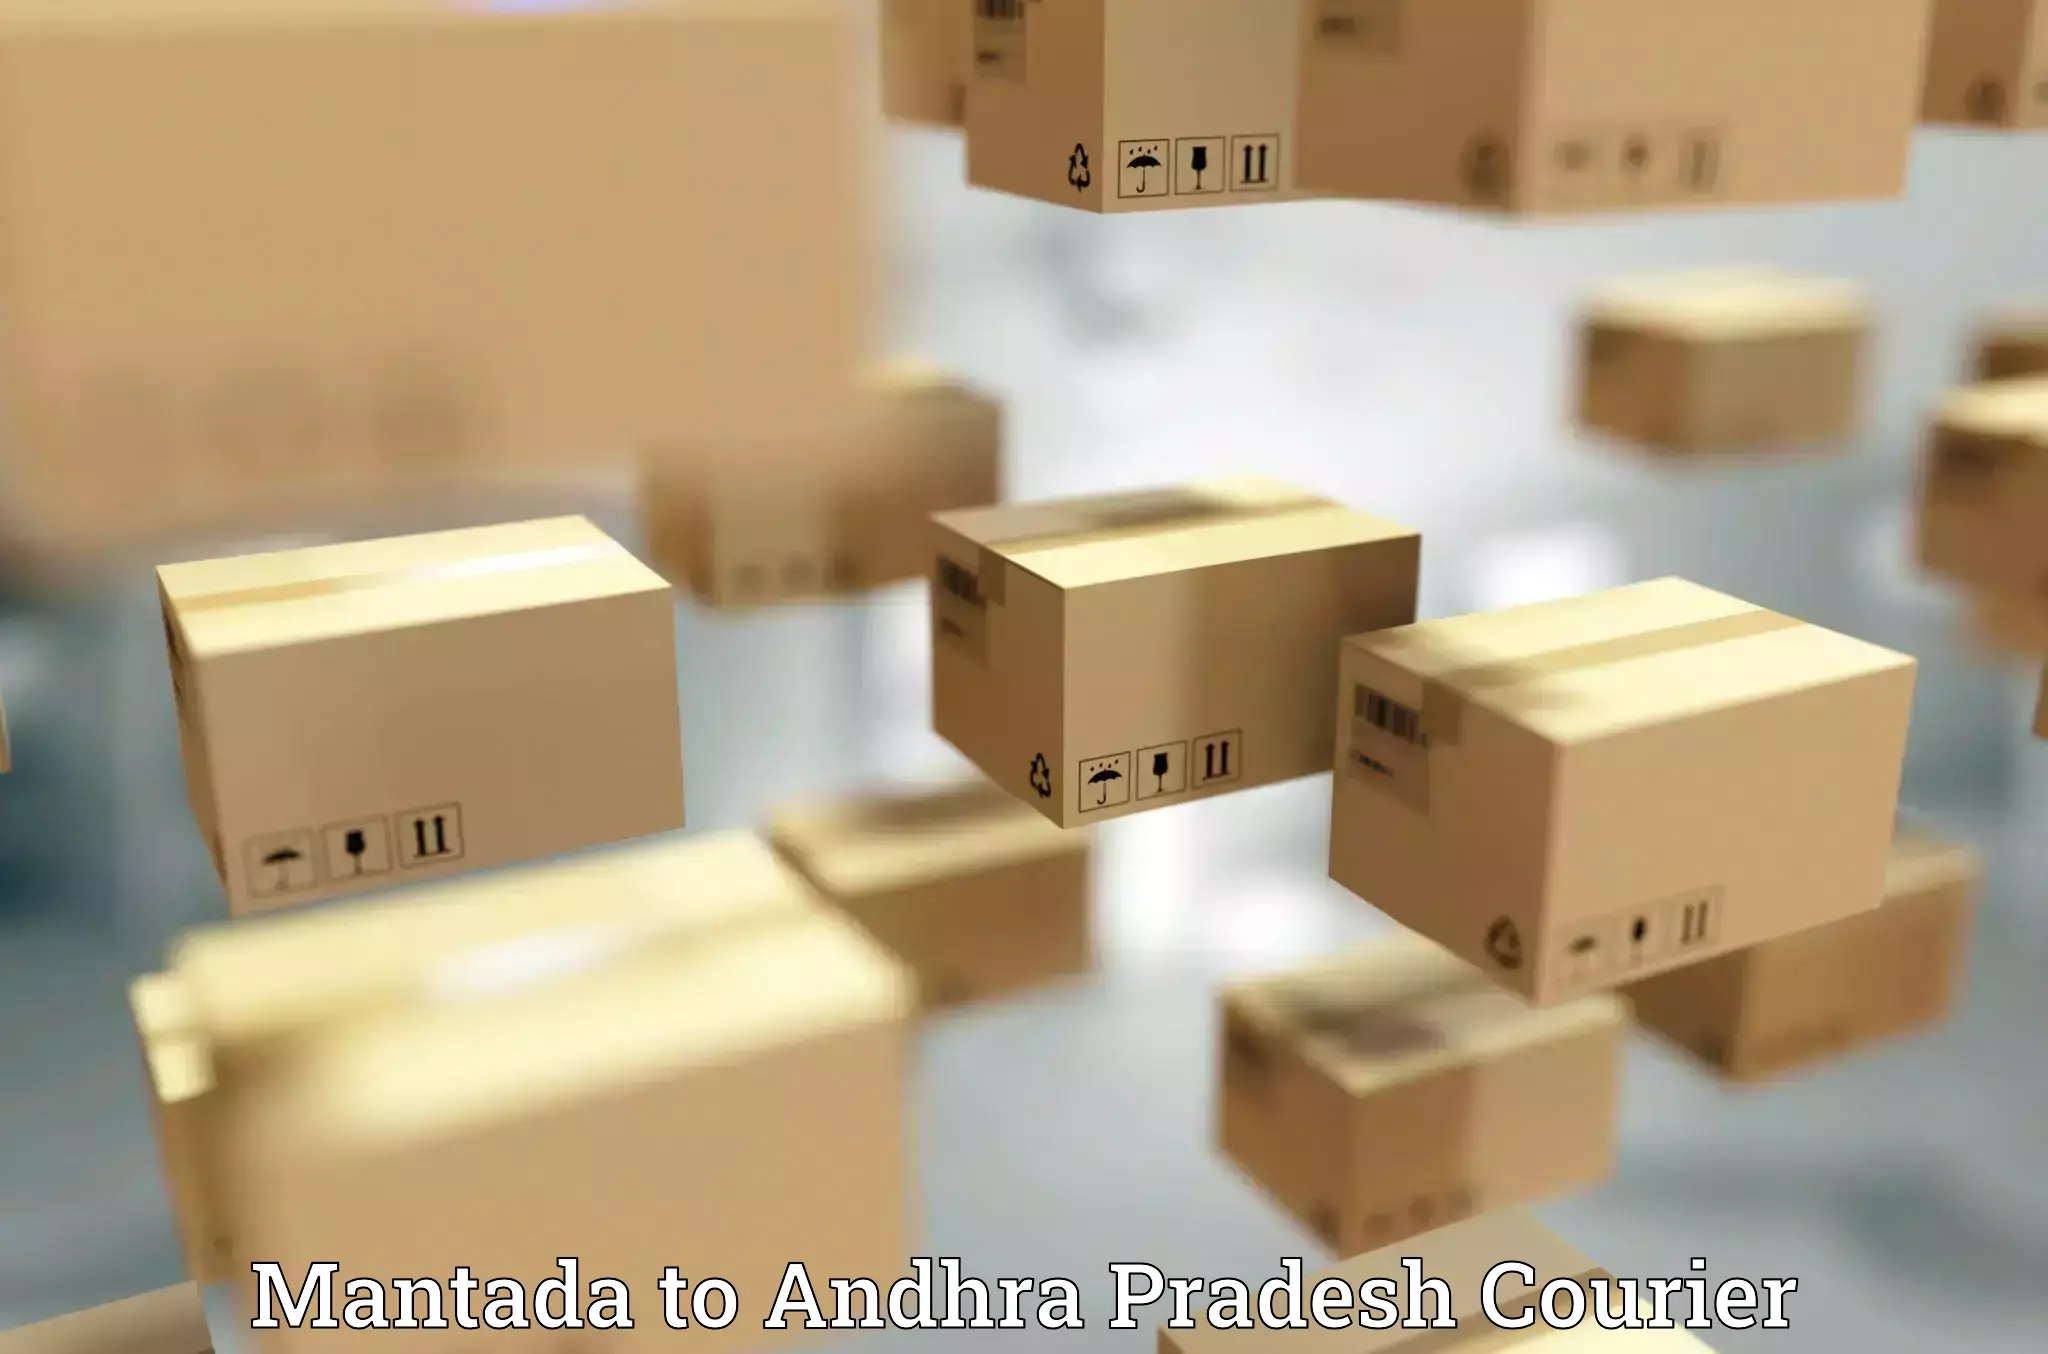 Retail shipping solutions Mantada to Andhra Pradesh